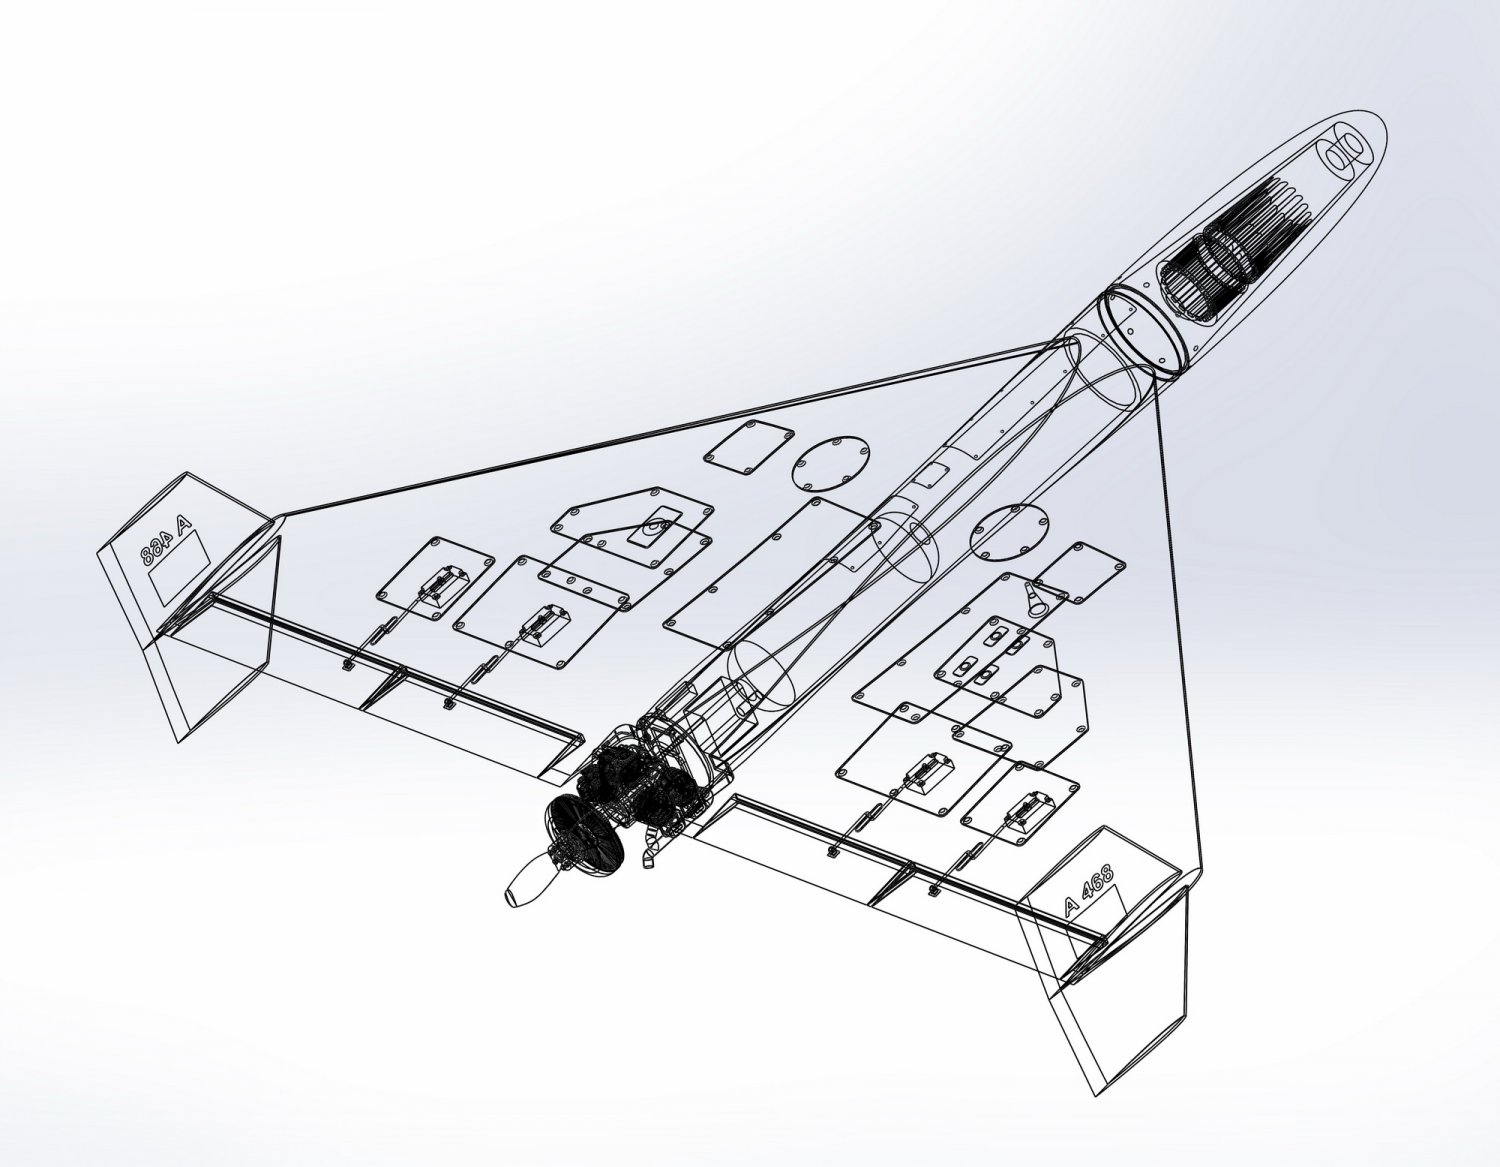 Shahed-136 Kamikaze Drone Geranium-2 3D Model by citizensnip